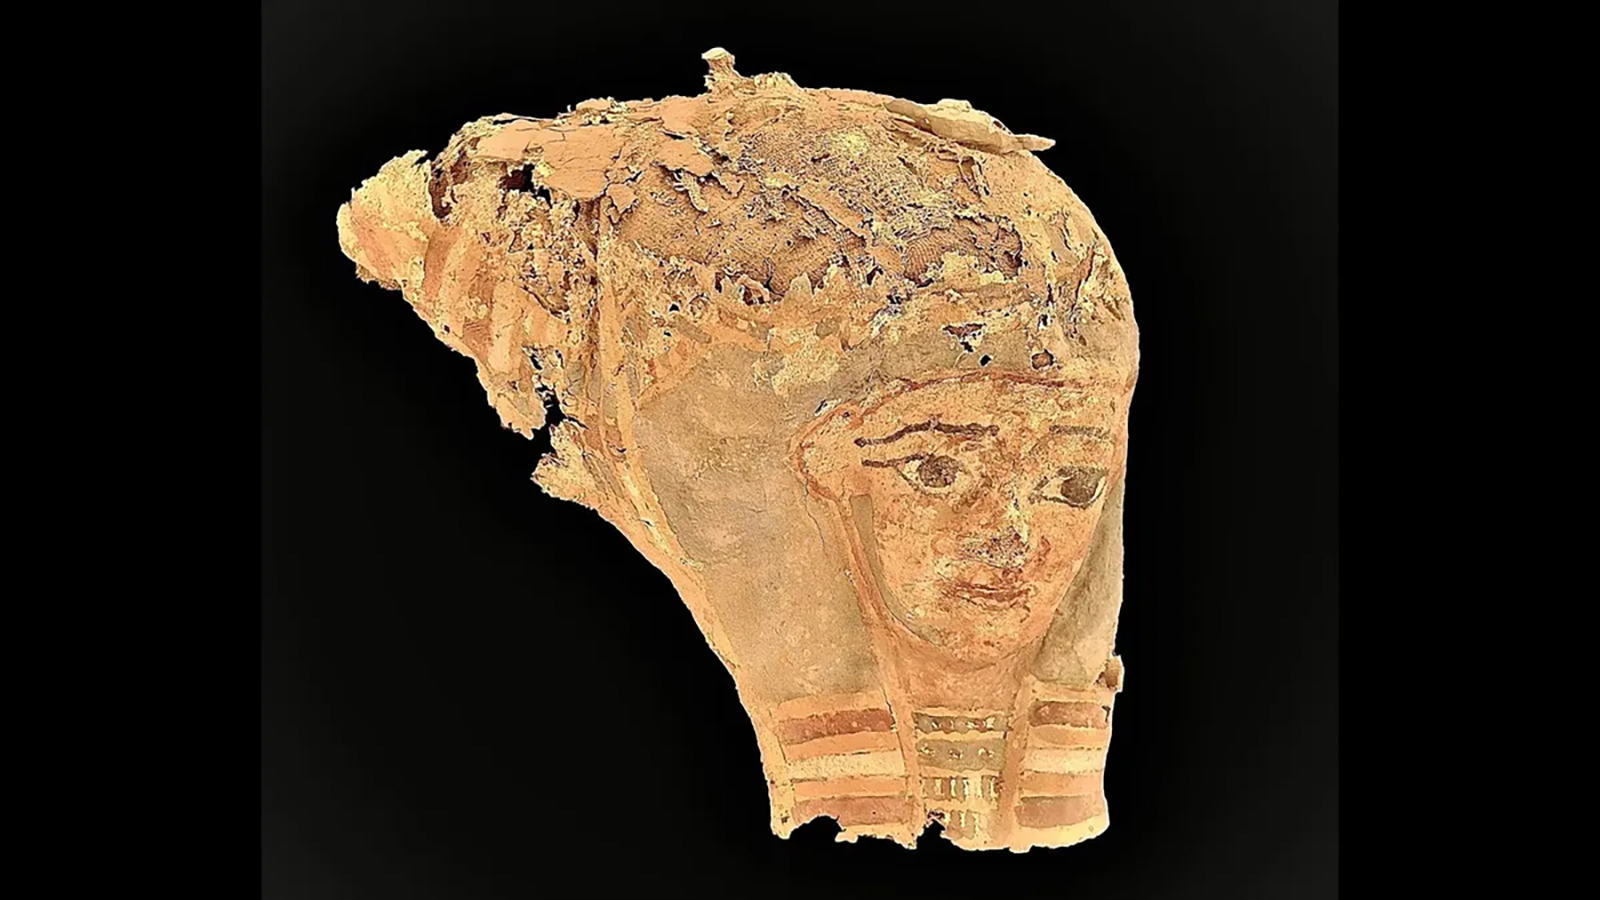 <p>Артефакт, найденный при раскопках в древнем городе Асуан. Возле мавзолея Ага-хана III (бывший Председатель Ассамблеи Лиги Наций умер в 1957 году) раскопали&nbsp;террасы древнеегипетских гробниц</p>